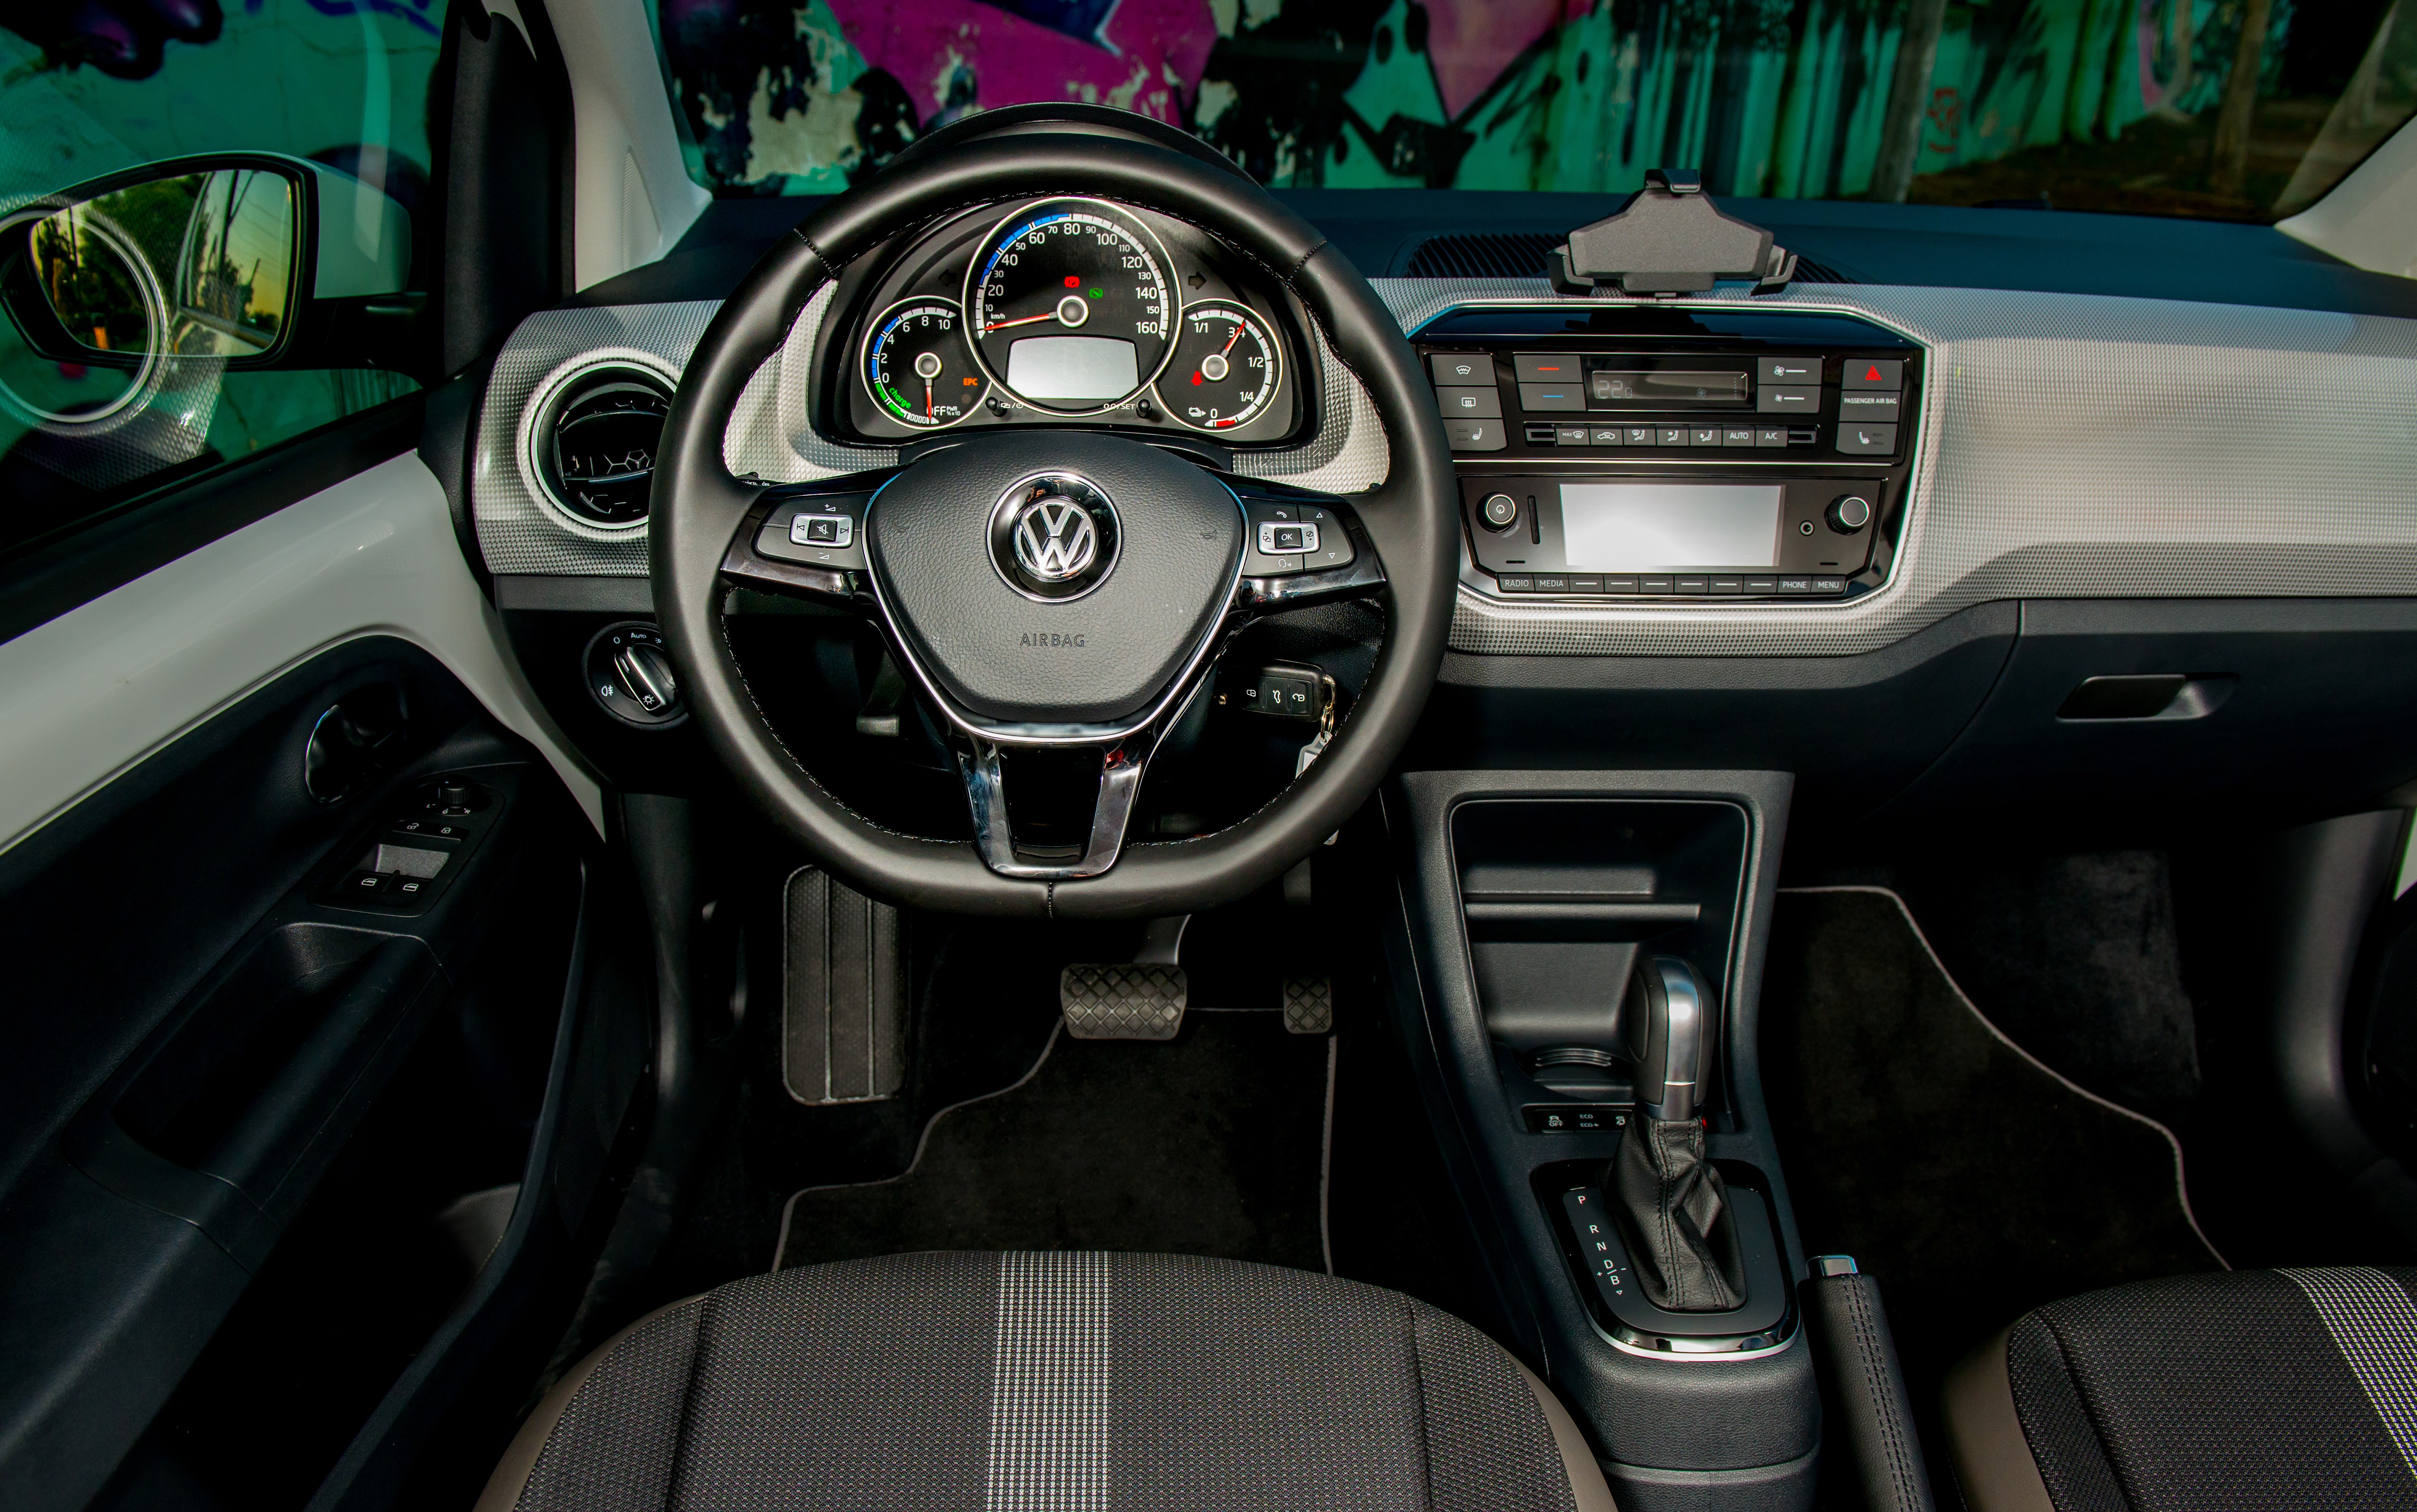 Το Σεπτέμβριο του 2016, η Volkswagen παρουσίασε στην Διεθνή Έκθεση Αυτοκινήτου στο Παρίσι το Volkswagen I.D., το μοντέλο-σταθμό της μάρκας για την μελλοντική της ανάπτυξη στους τομείς της ηλεκτροκίνησης και της αυτόνομης οδήγησης. Τους επόμενους 8 μήνες, η Volkswagen παρουσίασε 2 επιπλέον πρωτότυπα της προϊοντικής οικογένειας I.D. (I.D. Buzz, I.D. Crozz), δηλώνοντας με σαφήνεια τον προσανατολισμό της στην ηλεκτροκίνηση, μέσα από την ανάπτυξη μιας πλήρους γκάμας μοντέλων σε διάφορες κατηγορίες. 